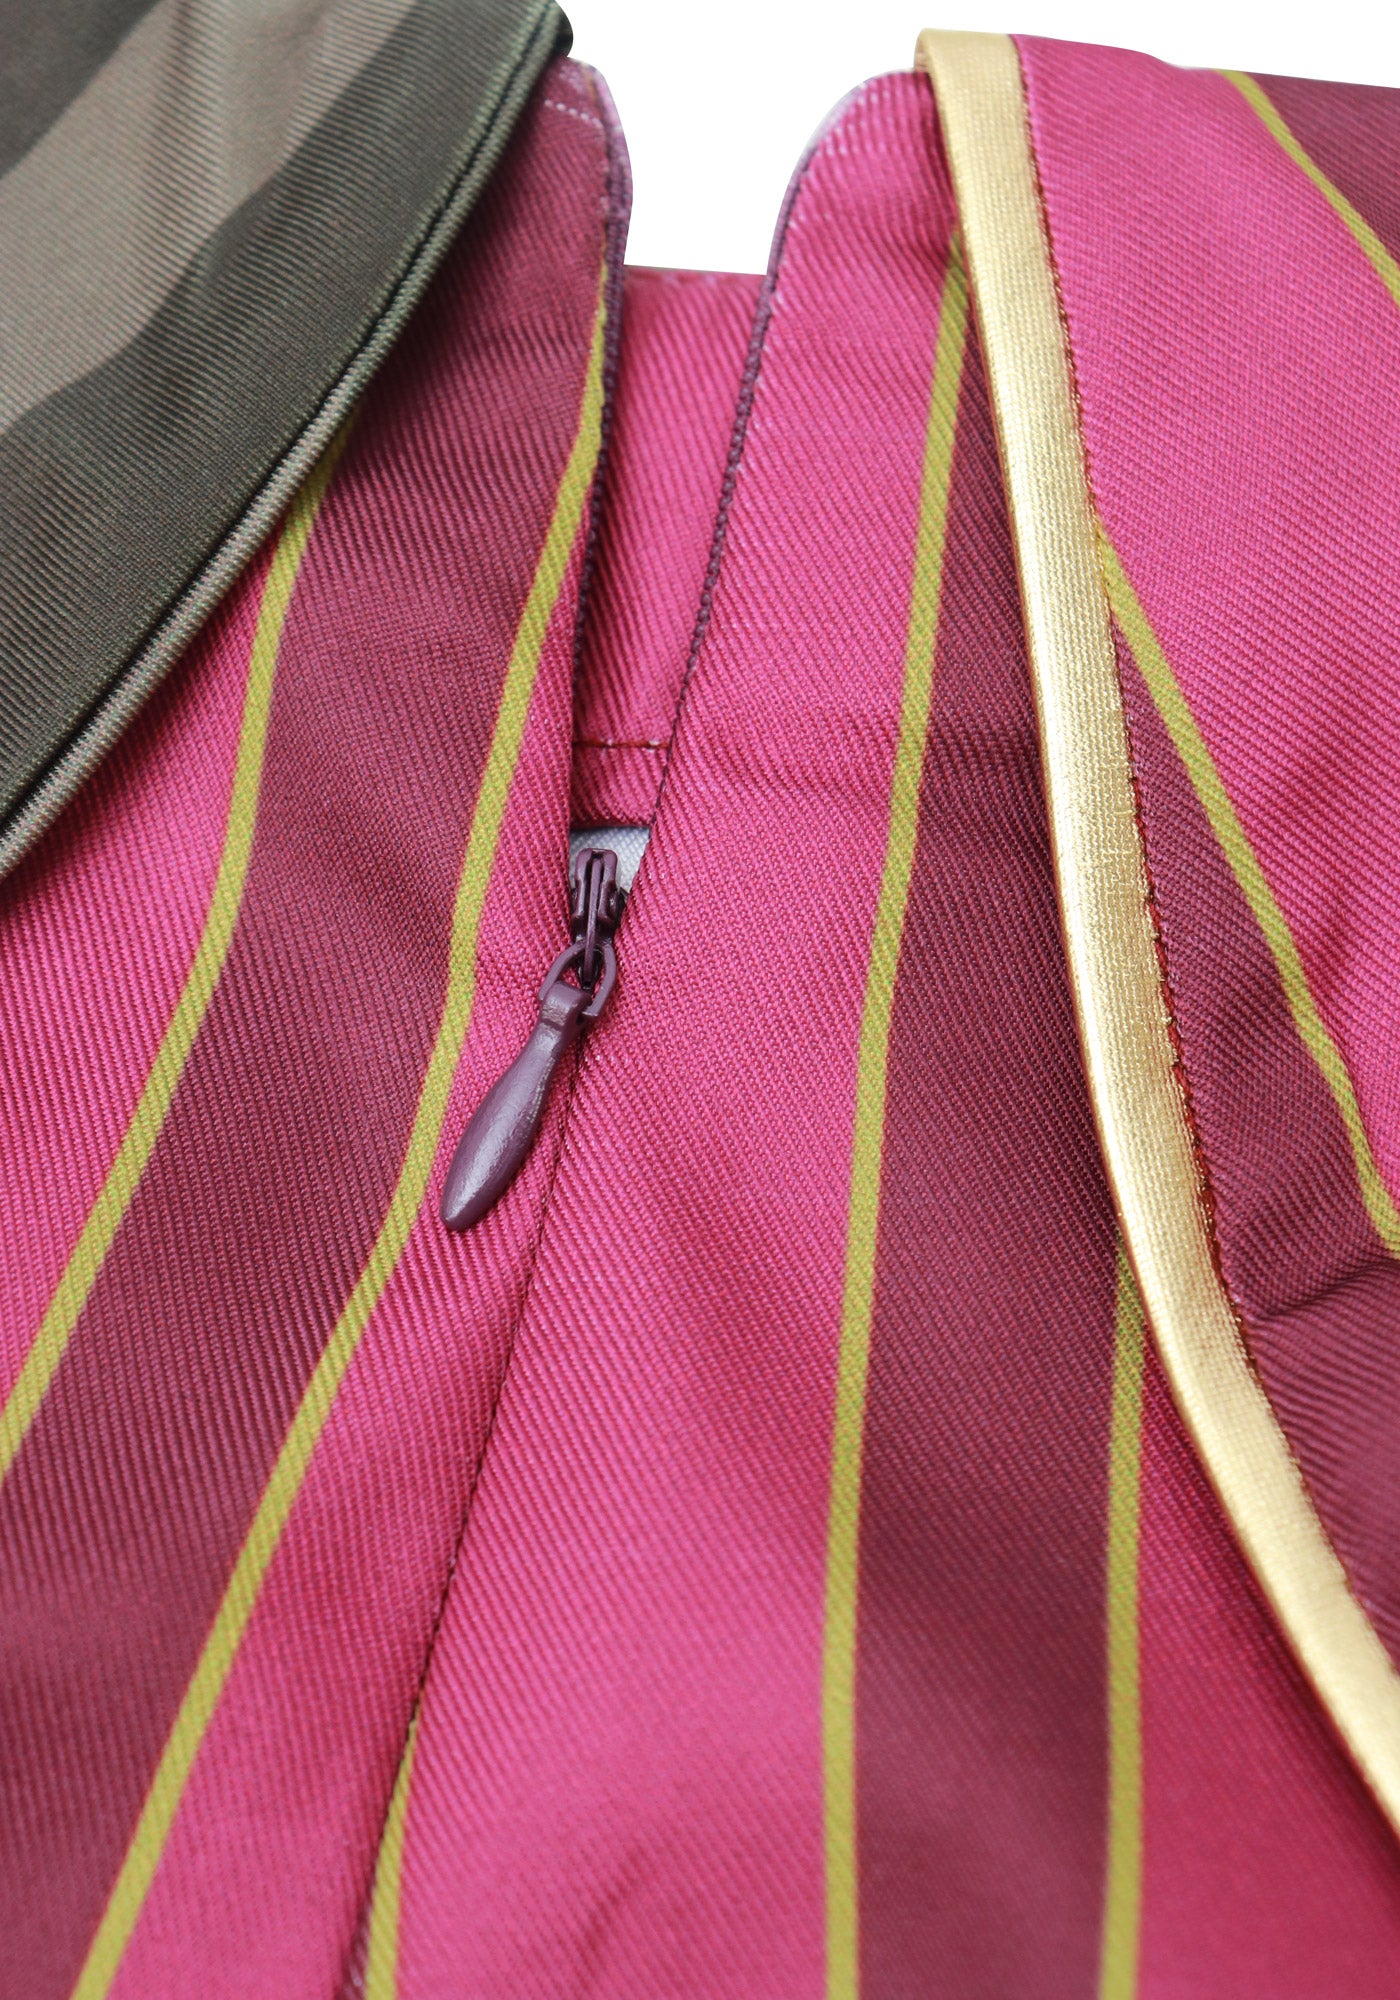 DAZCOS レディース 女性用 パウダー コスプレ コスチューム 衣装 ゴルブとウエストベルト付き ハロウィン用